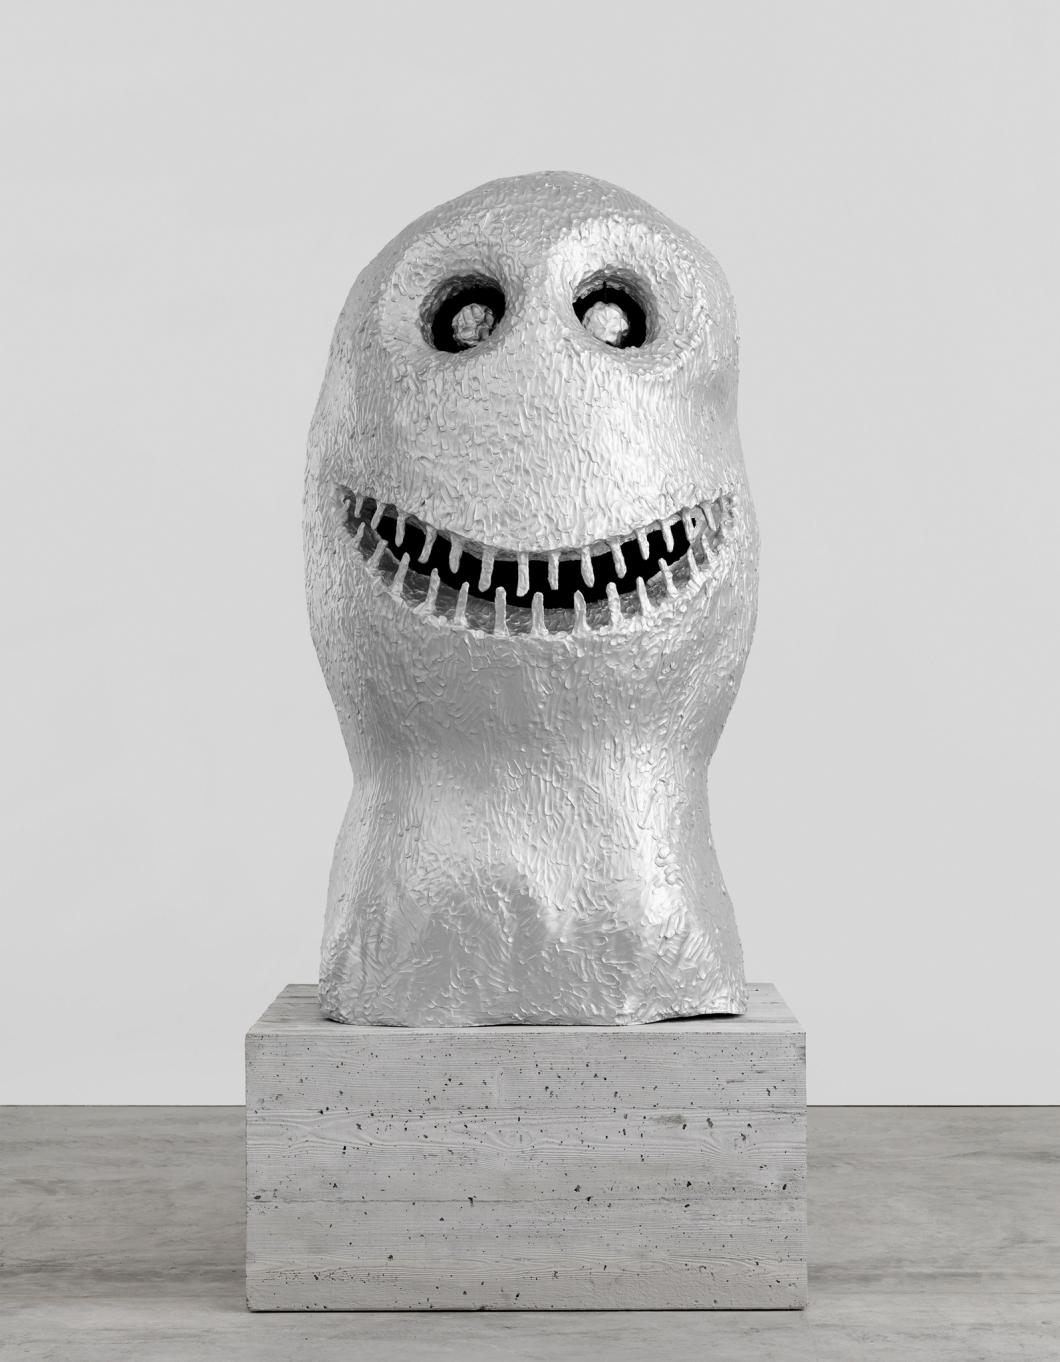 Eine Skulptur aus Aluminium, die wie ein vereinfachter grinsender Kopf aussieht, auf einem Betonsockel